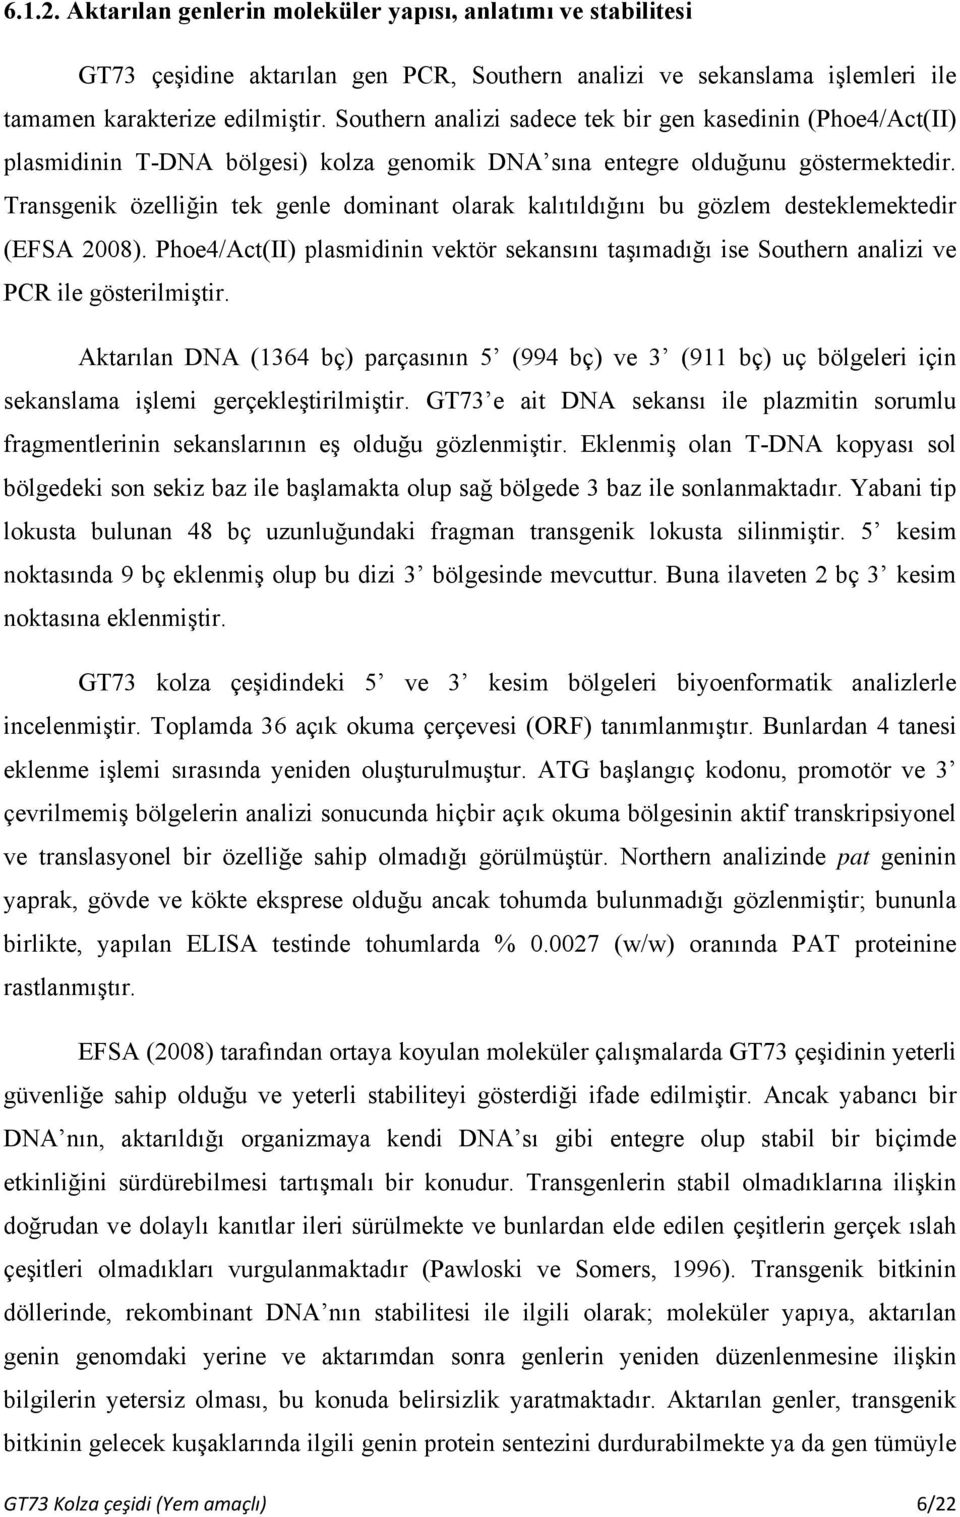 Transgenik özelliğin tek genle dominant olarak kalıtıldığını bu gözlem desteklemektedir (EFSA 2008).